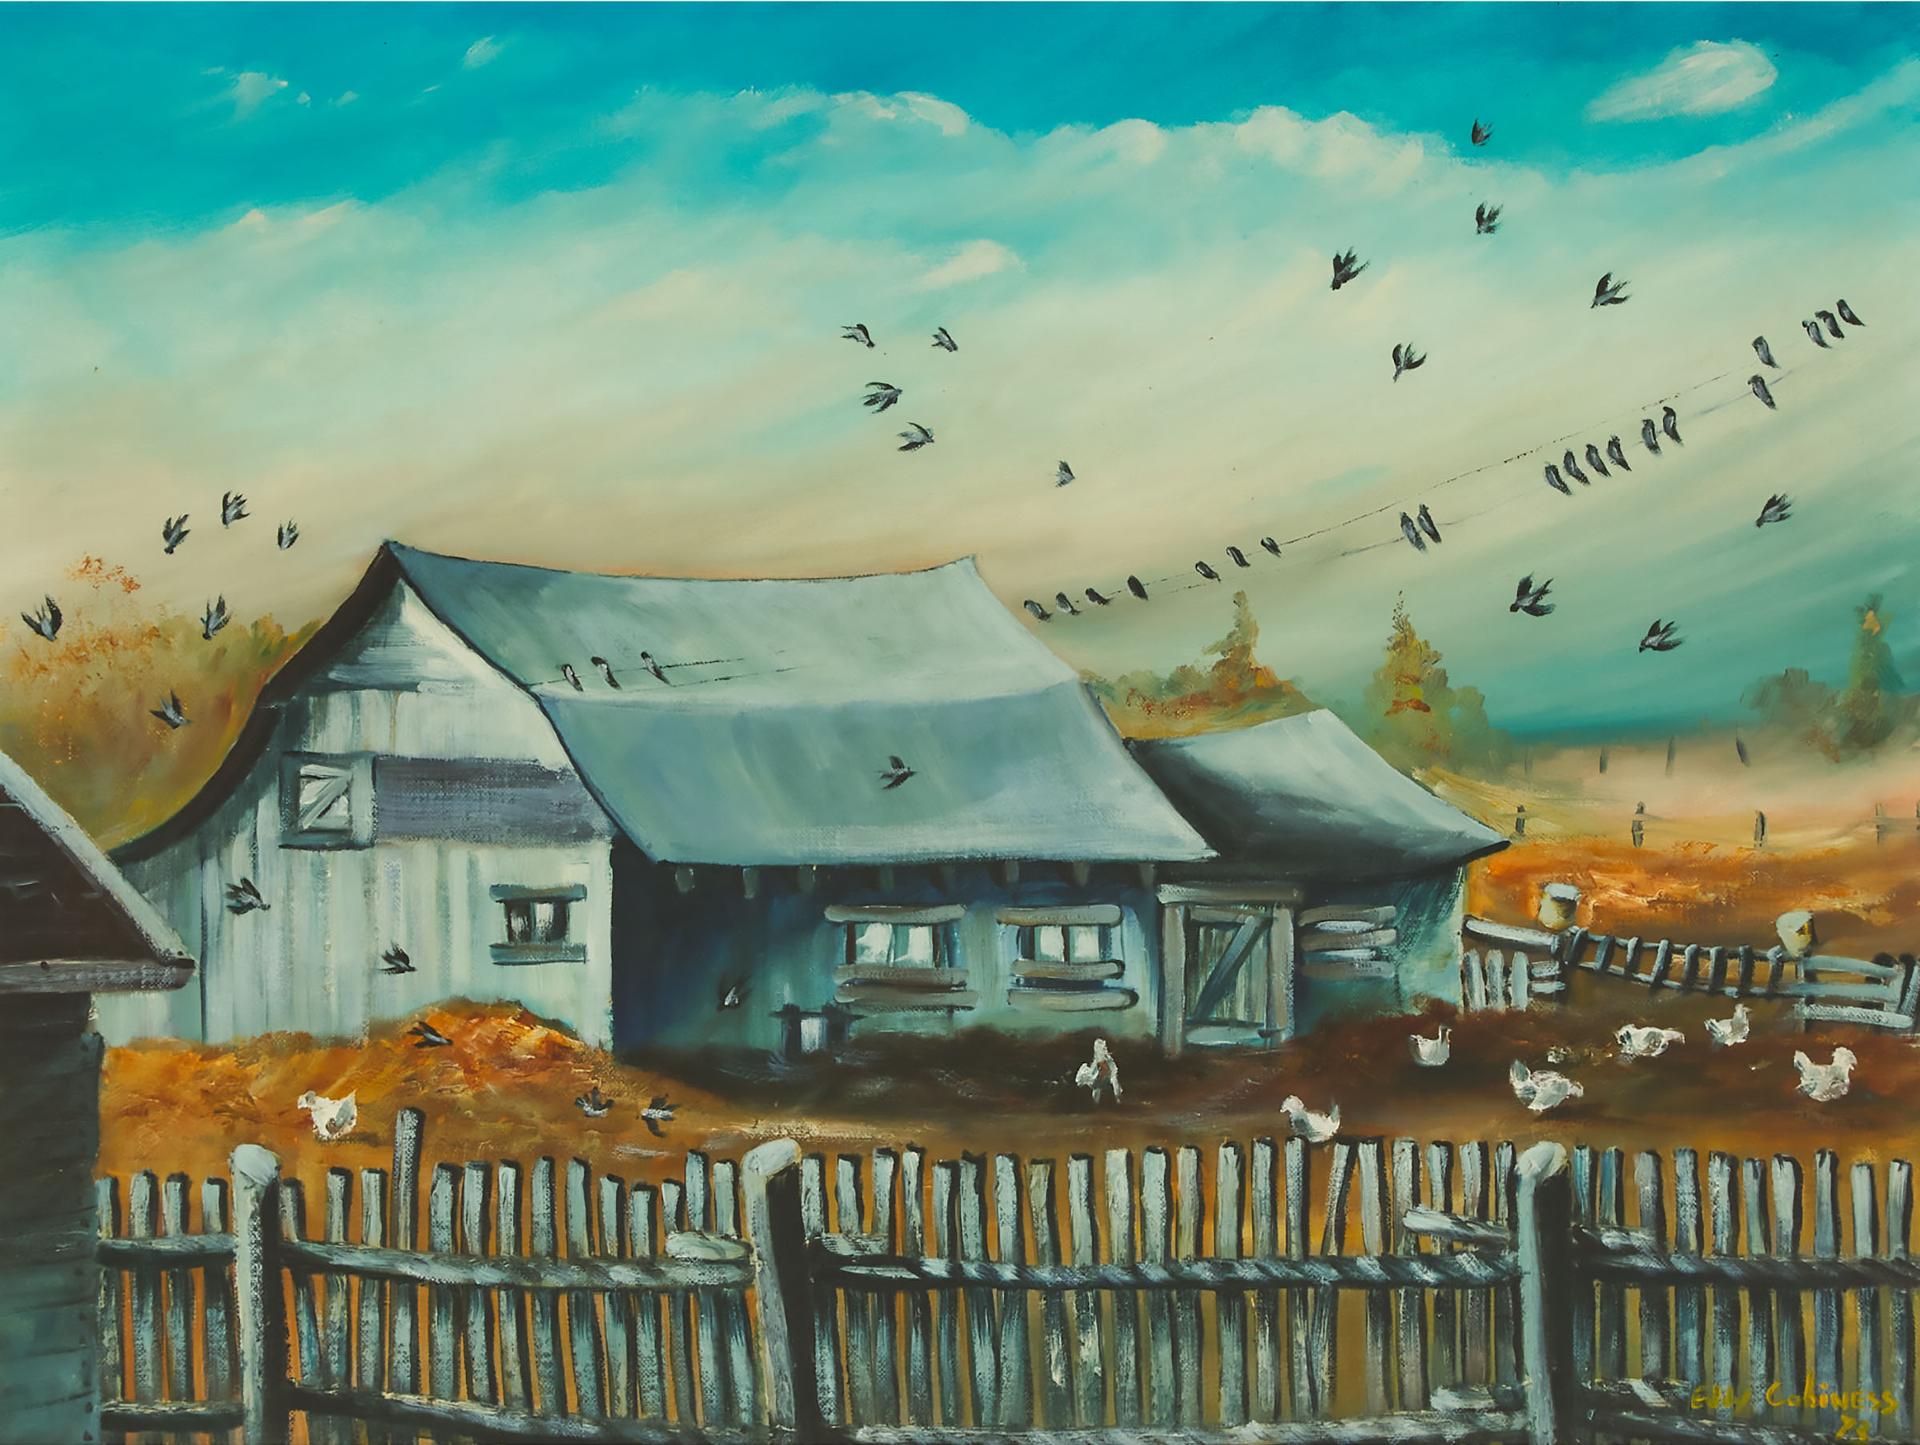 Eddy Cobiness (1933-1996) - Chickens In Farmyard, 1973